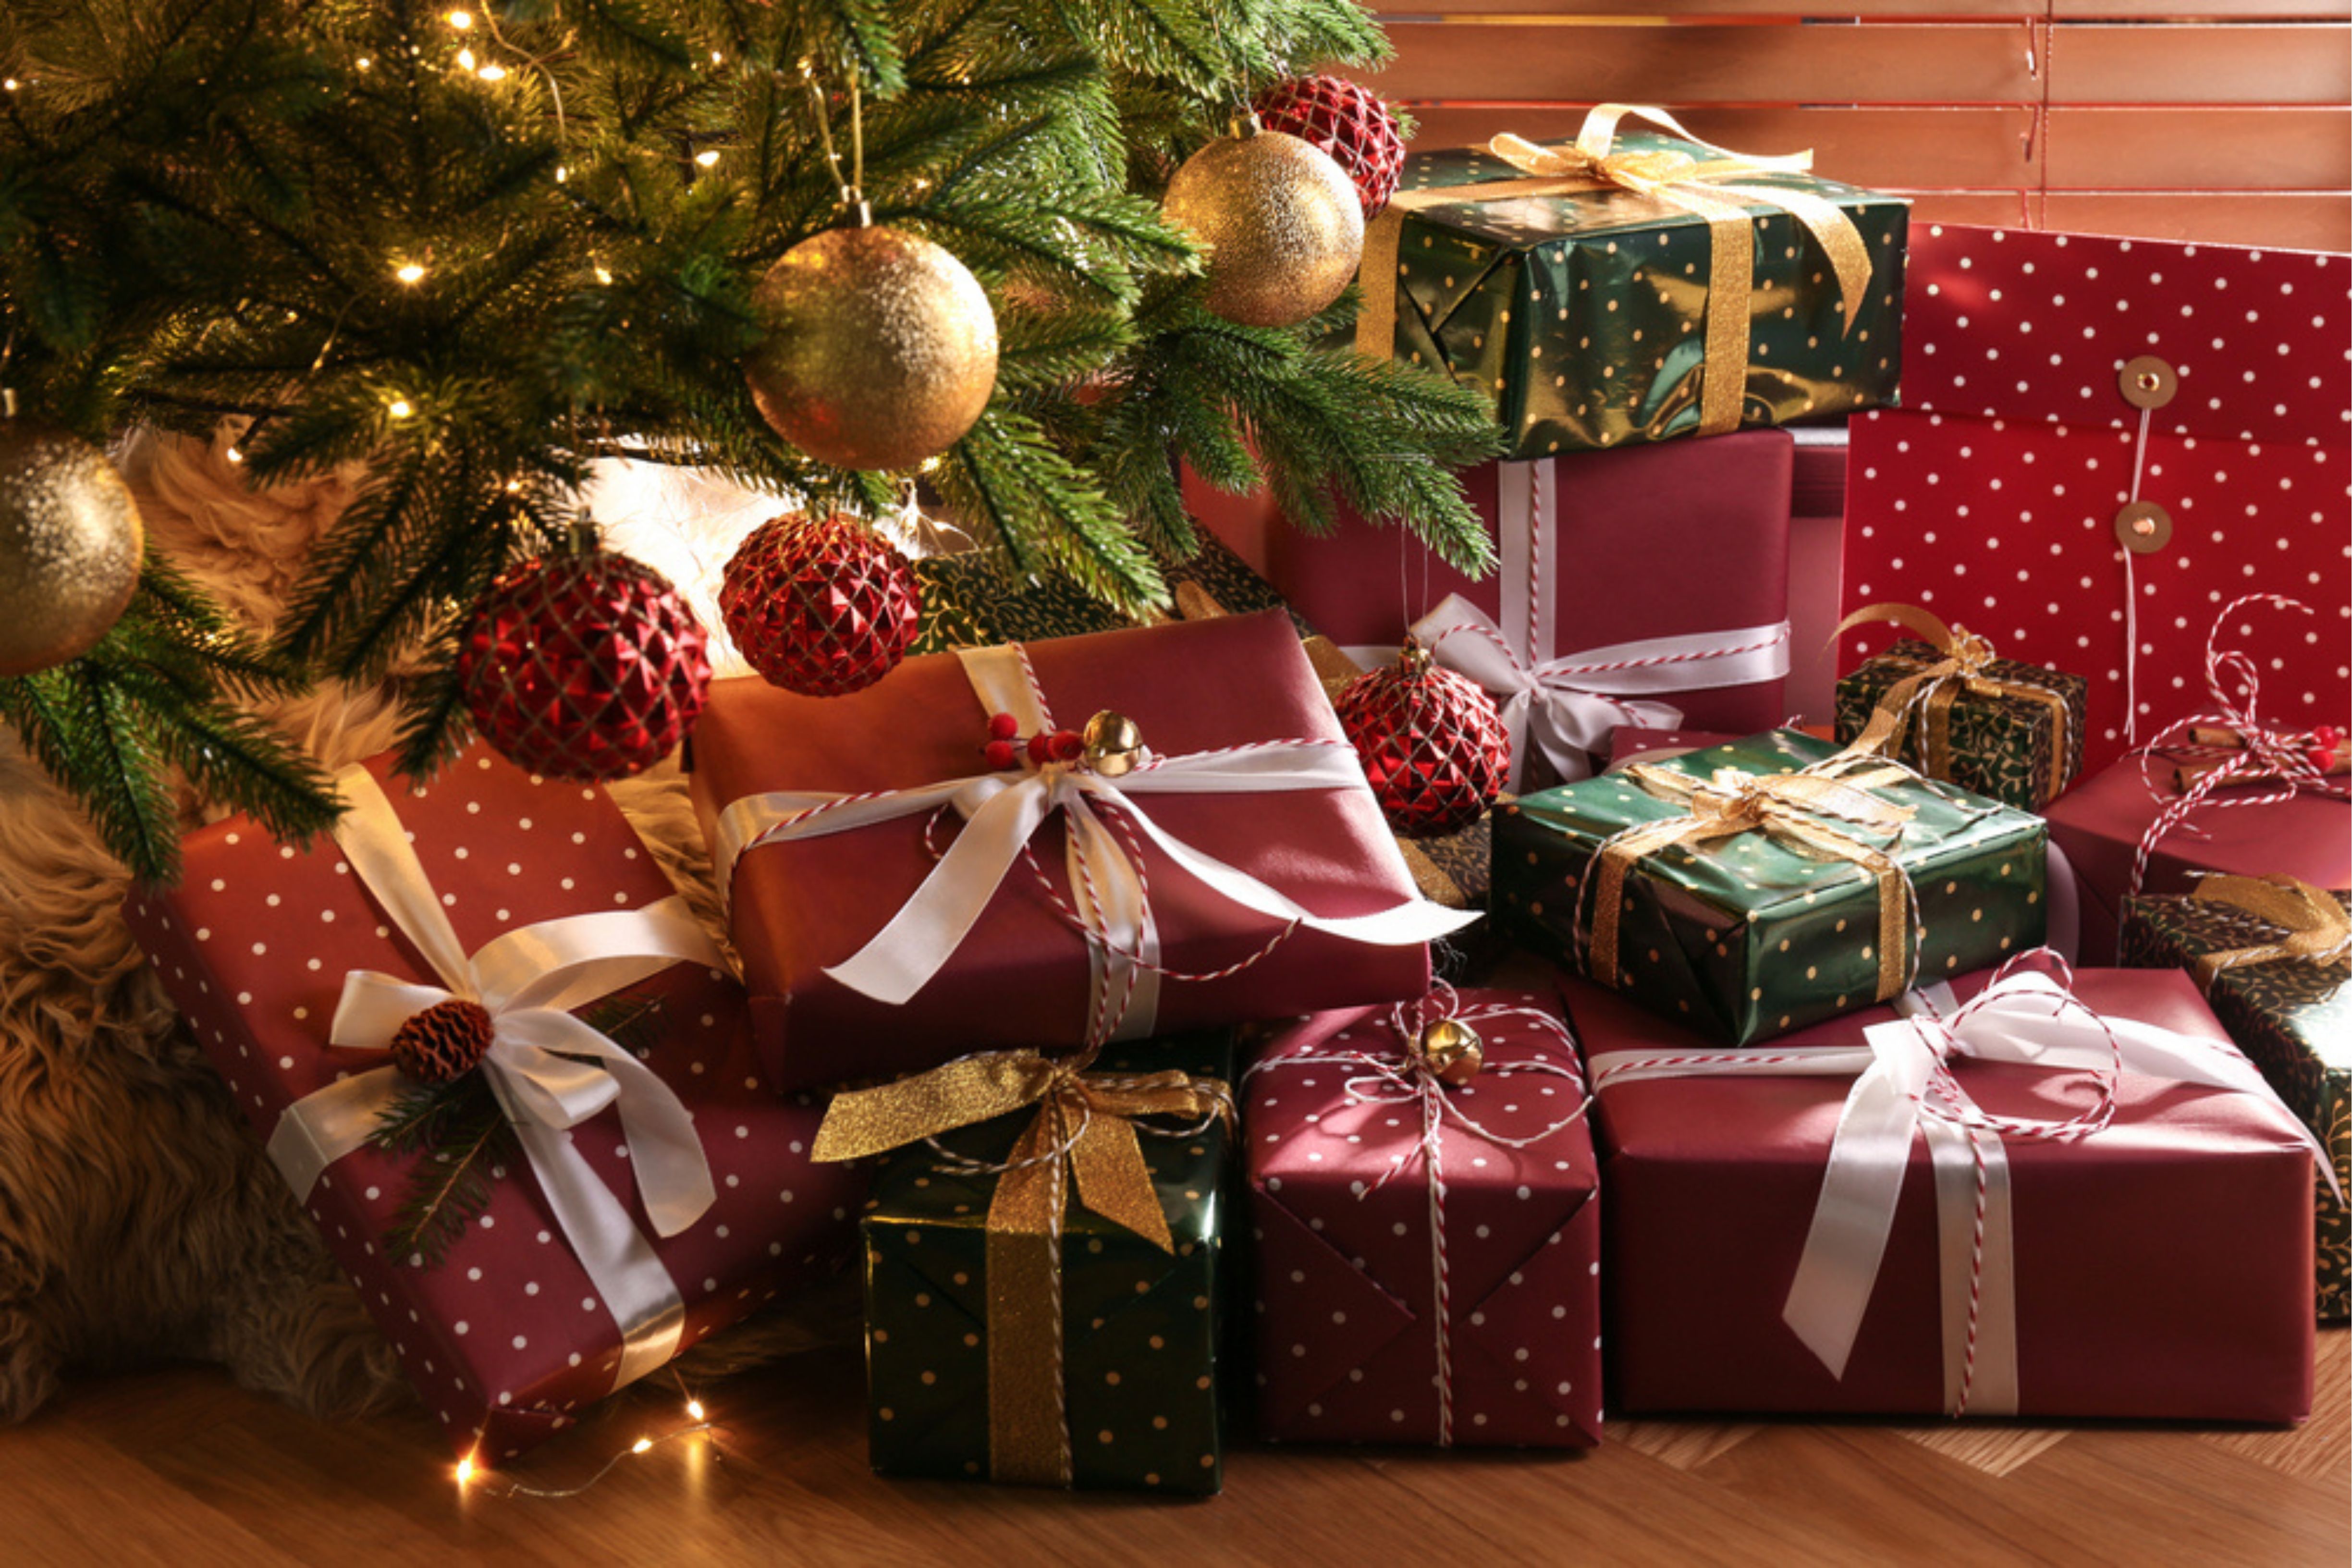 Cadeaux de Noël © Shutterstock